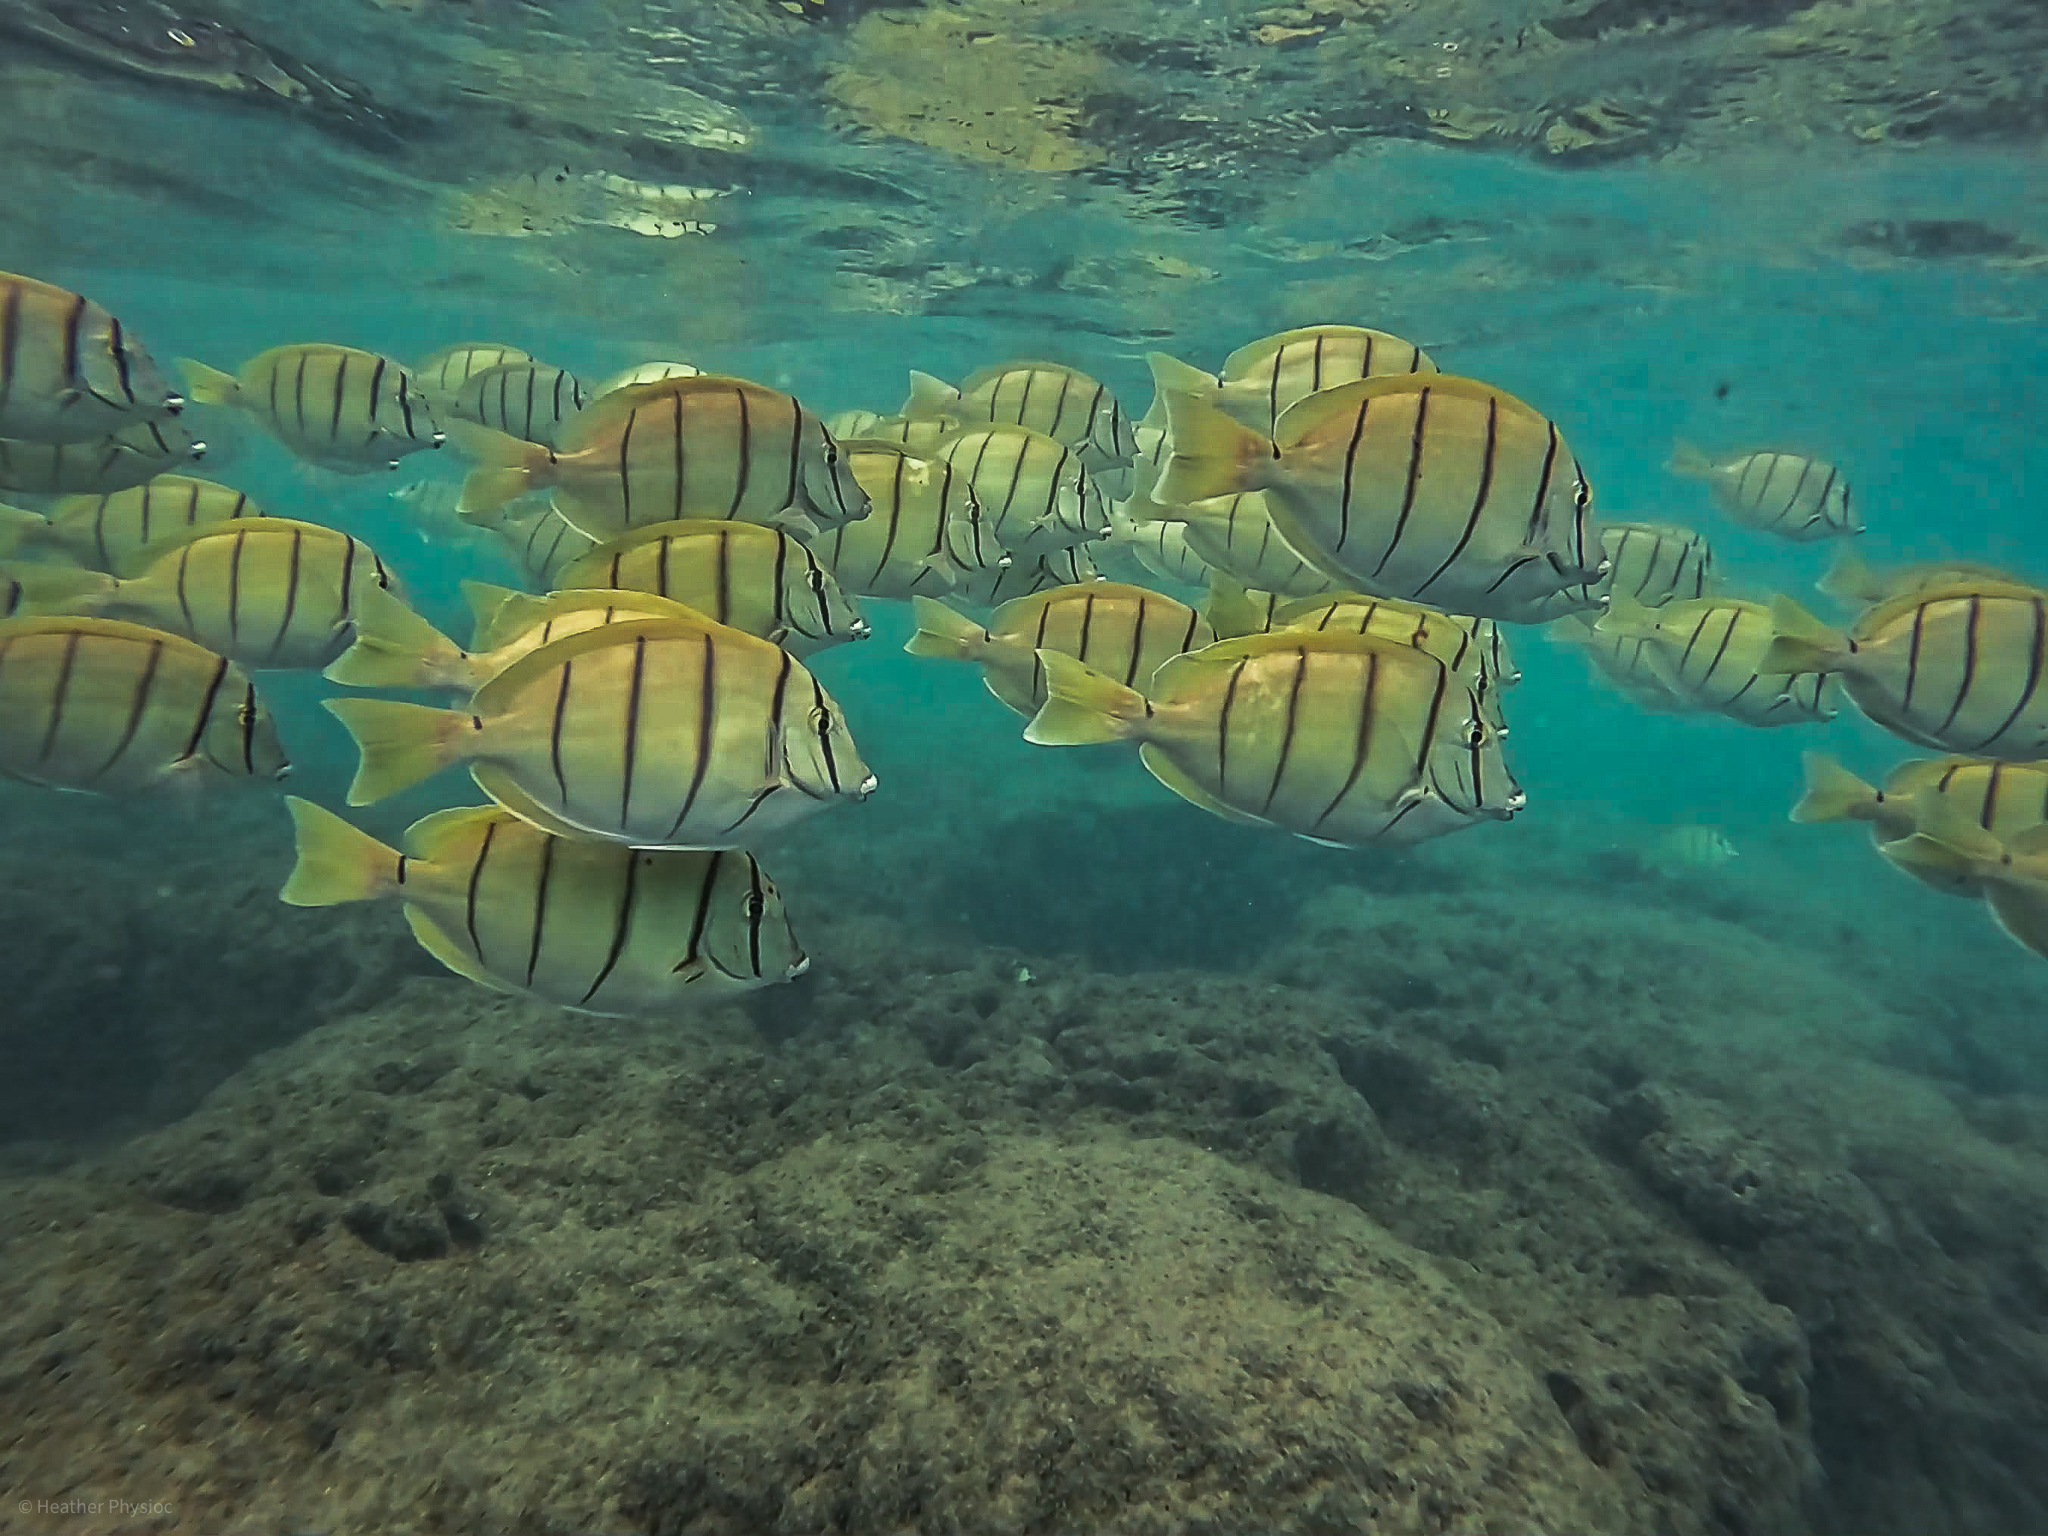 A school of Convict surgeonfish (tang) in Hanauma Bay in Hawaii